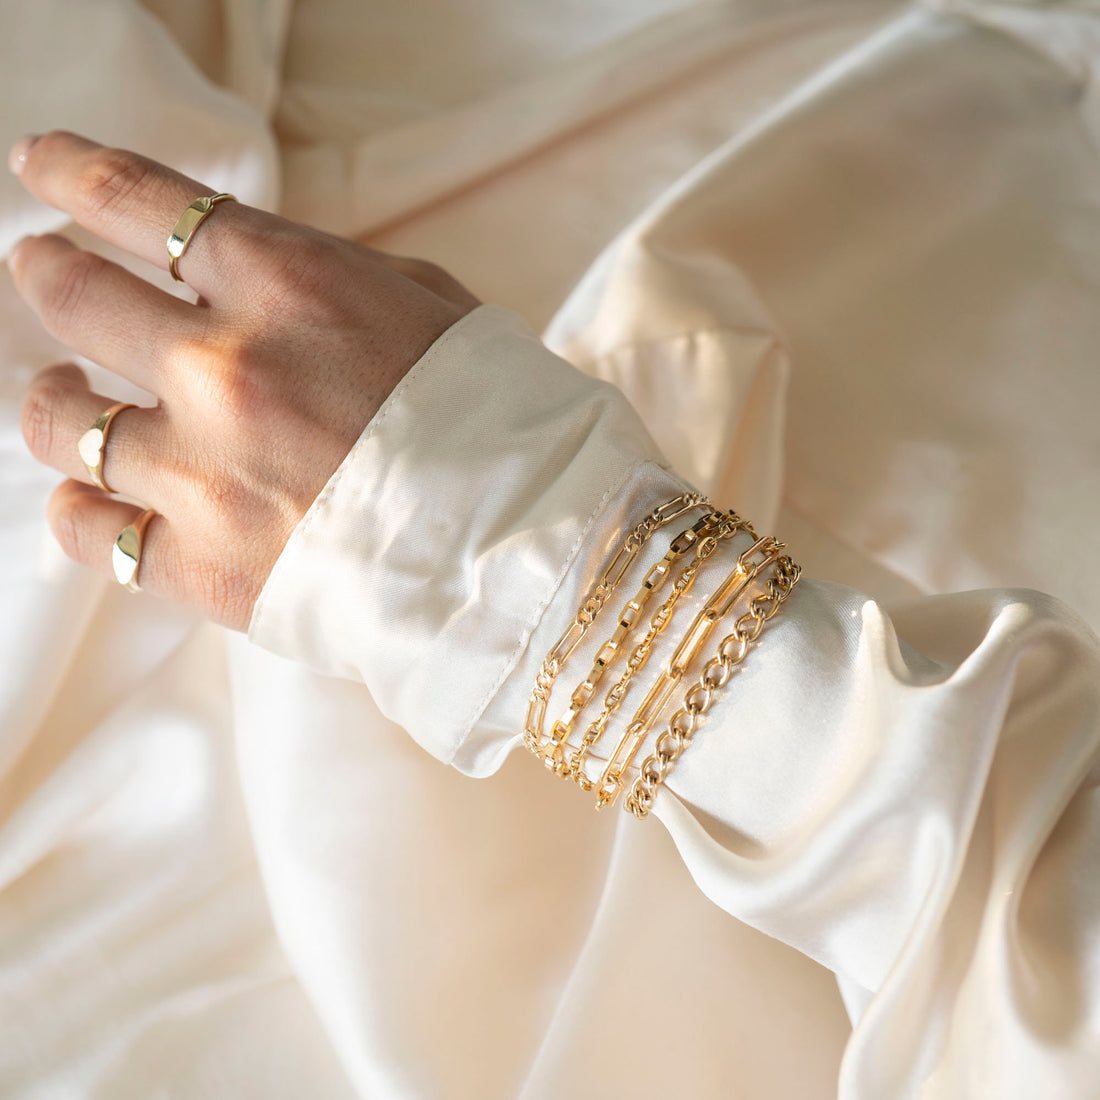 Gold Athena Bracelet, 14k Gold Bracelet, Simple Gold Bracelet, Chain and Link Bracelet, Chain Bracelet, Gift for Her, Rectangle Bracelet